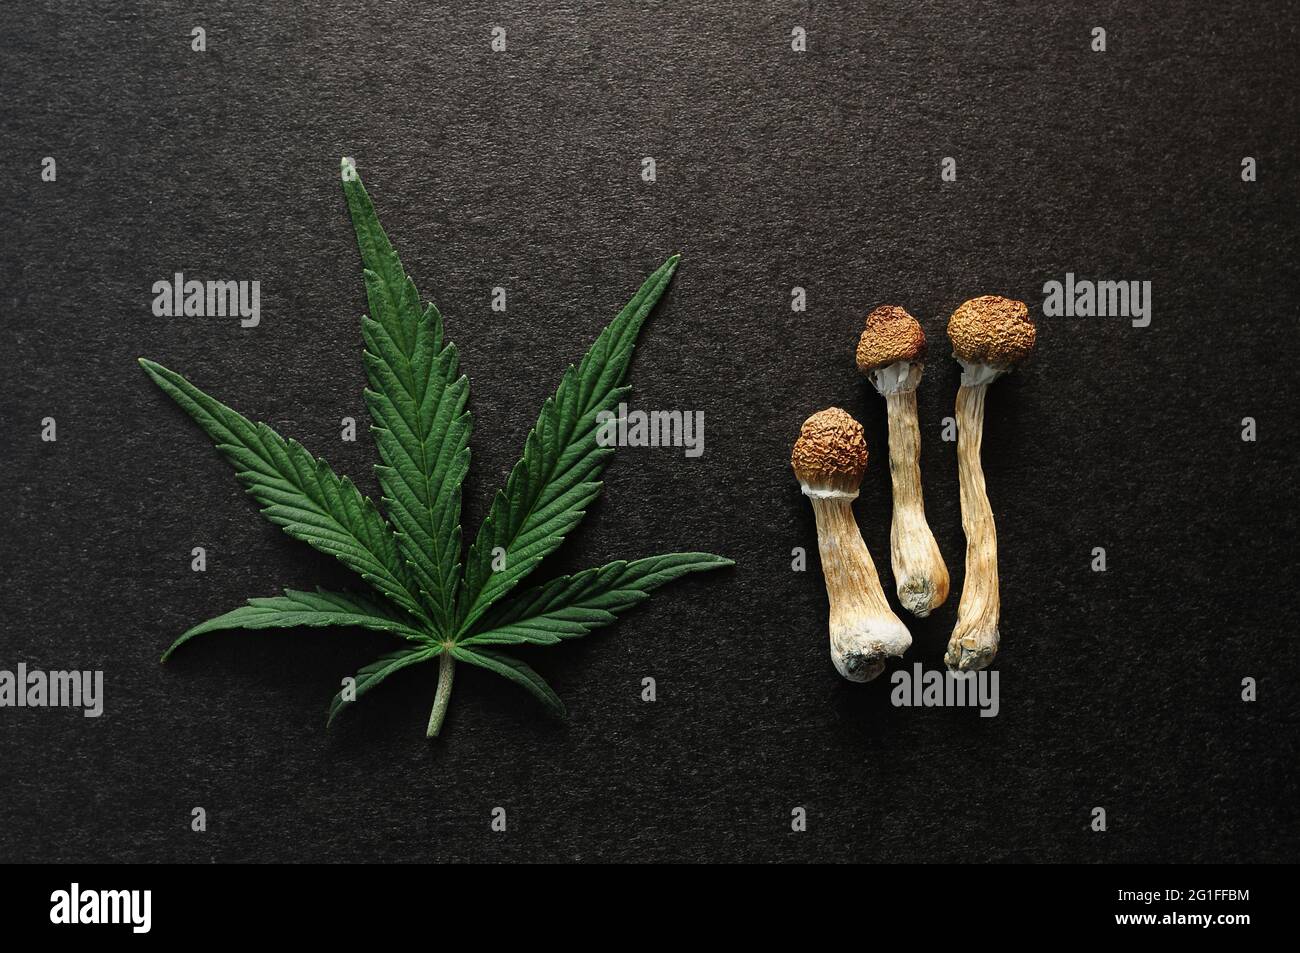 Funghi psilocibe cubensis secchi e foglie di cannabis su fondo nero, piatto. Viaggio psichedelico. Erboristeria naturale. Esp. Spirituale Foto Stock